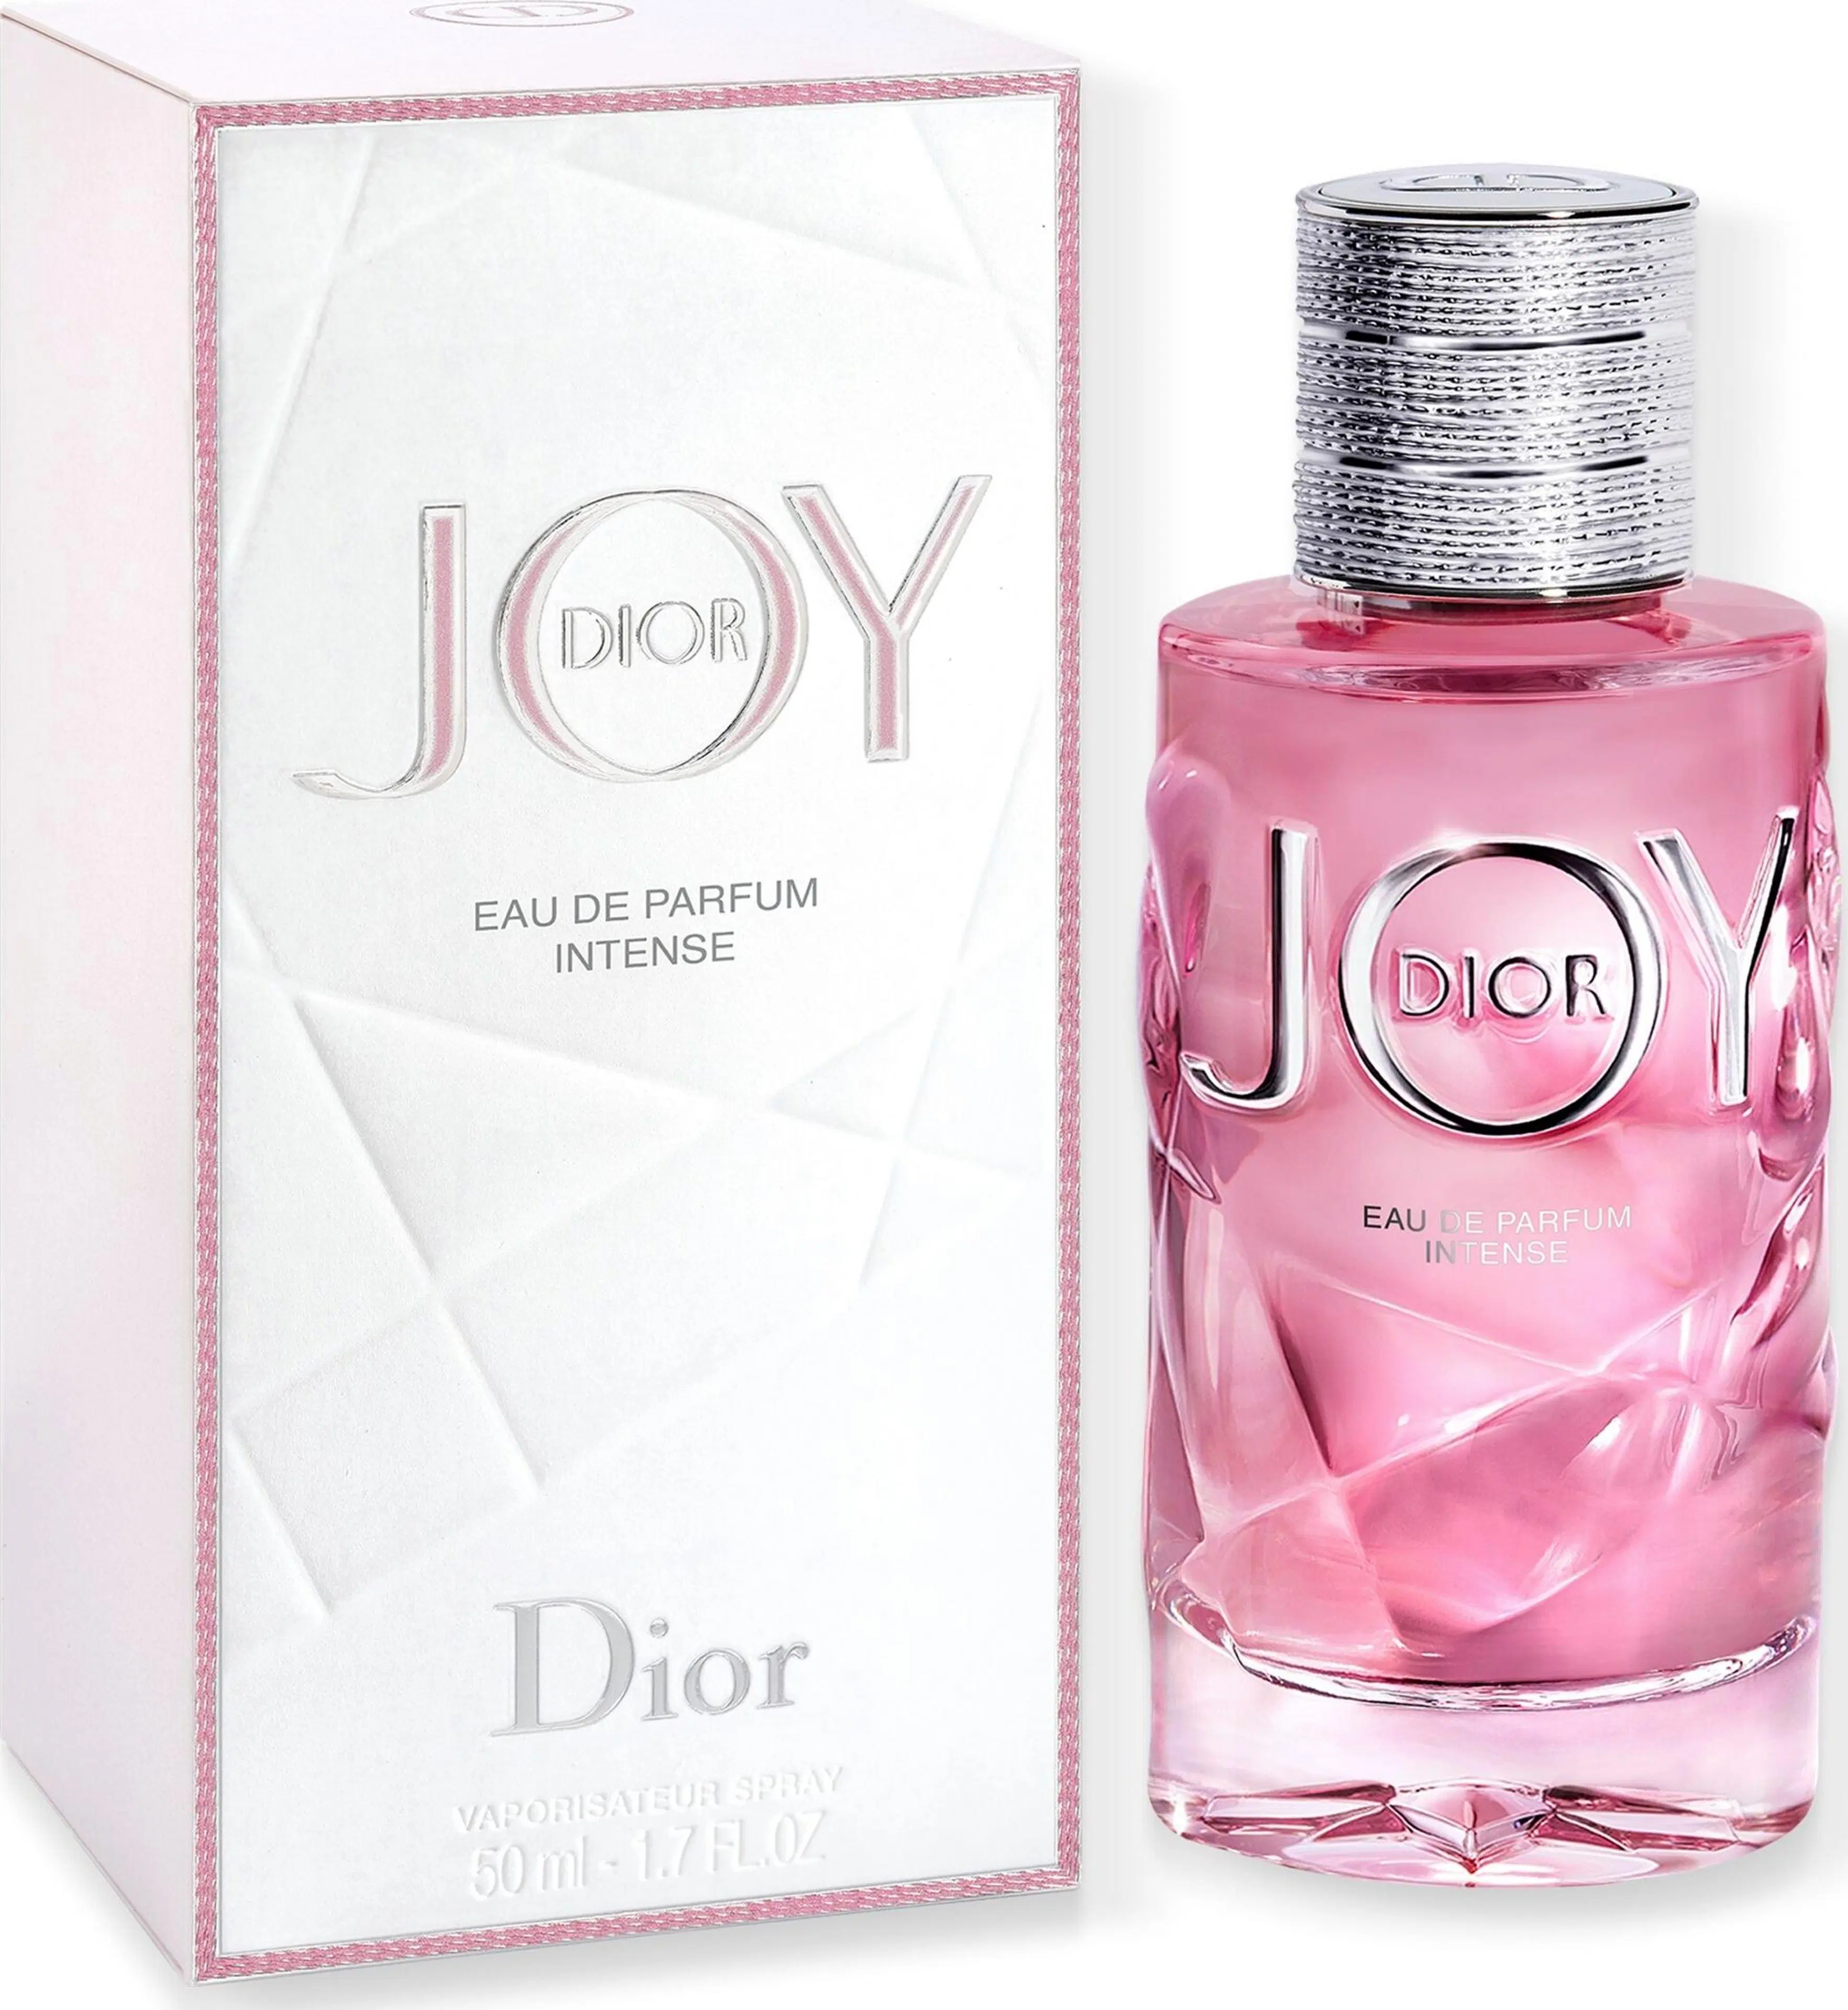 DIOR JOY by Dior EdP Intense tuoksu 50 ml